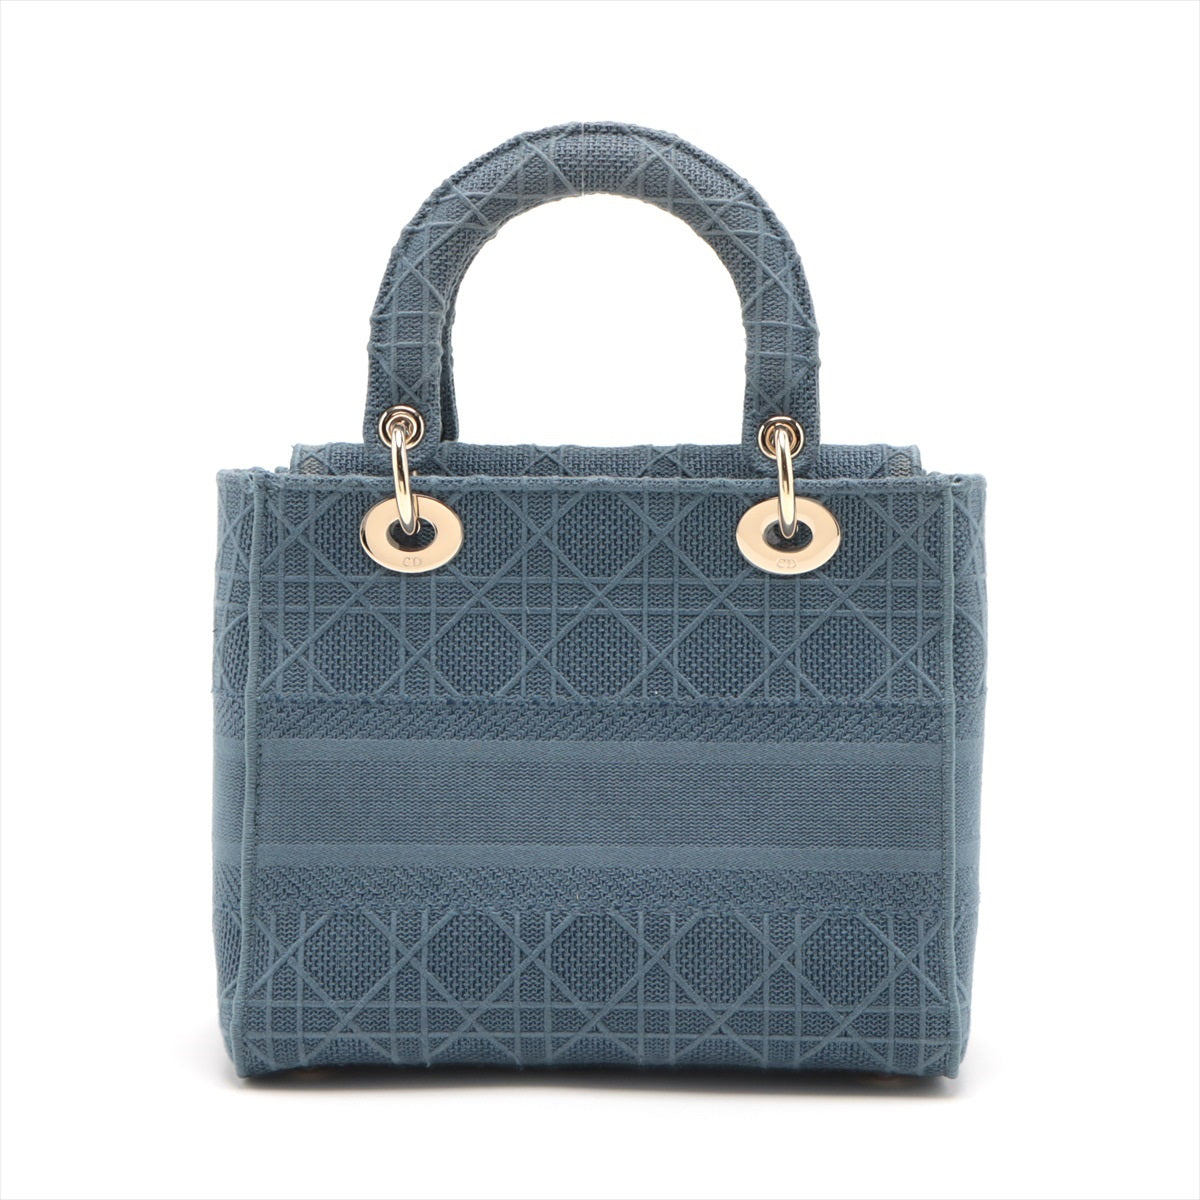 Christian Dior Lady Dior Cannage canvas 2 Way Handbag Blue